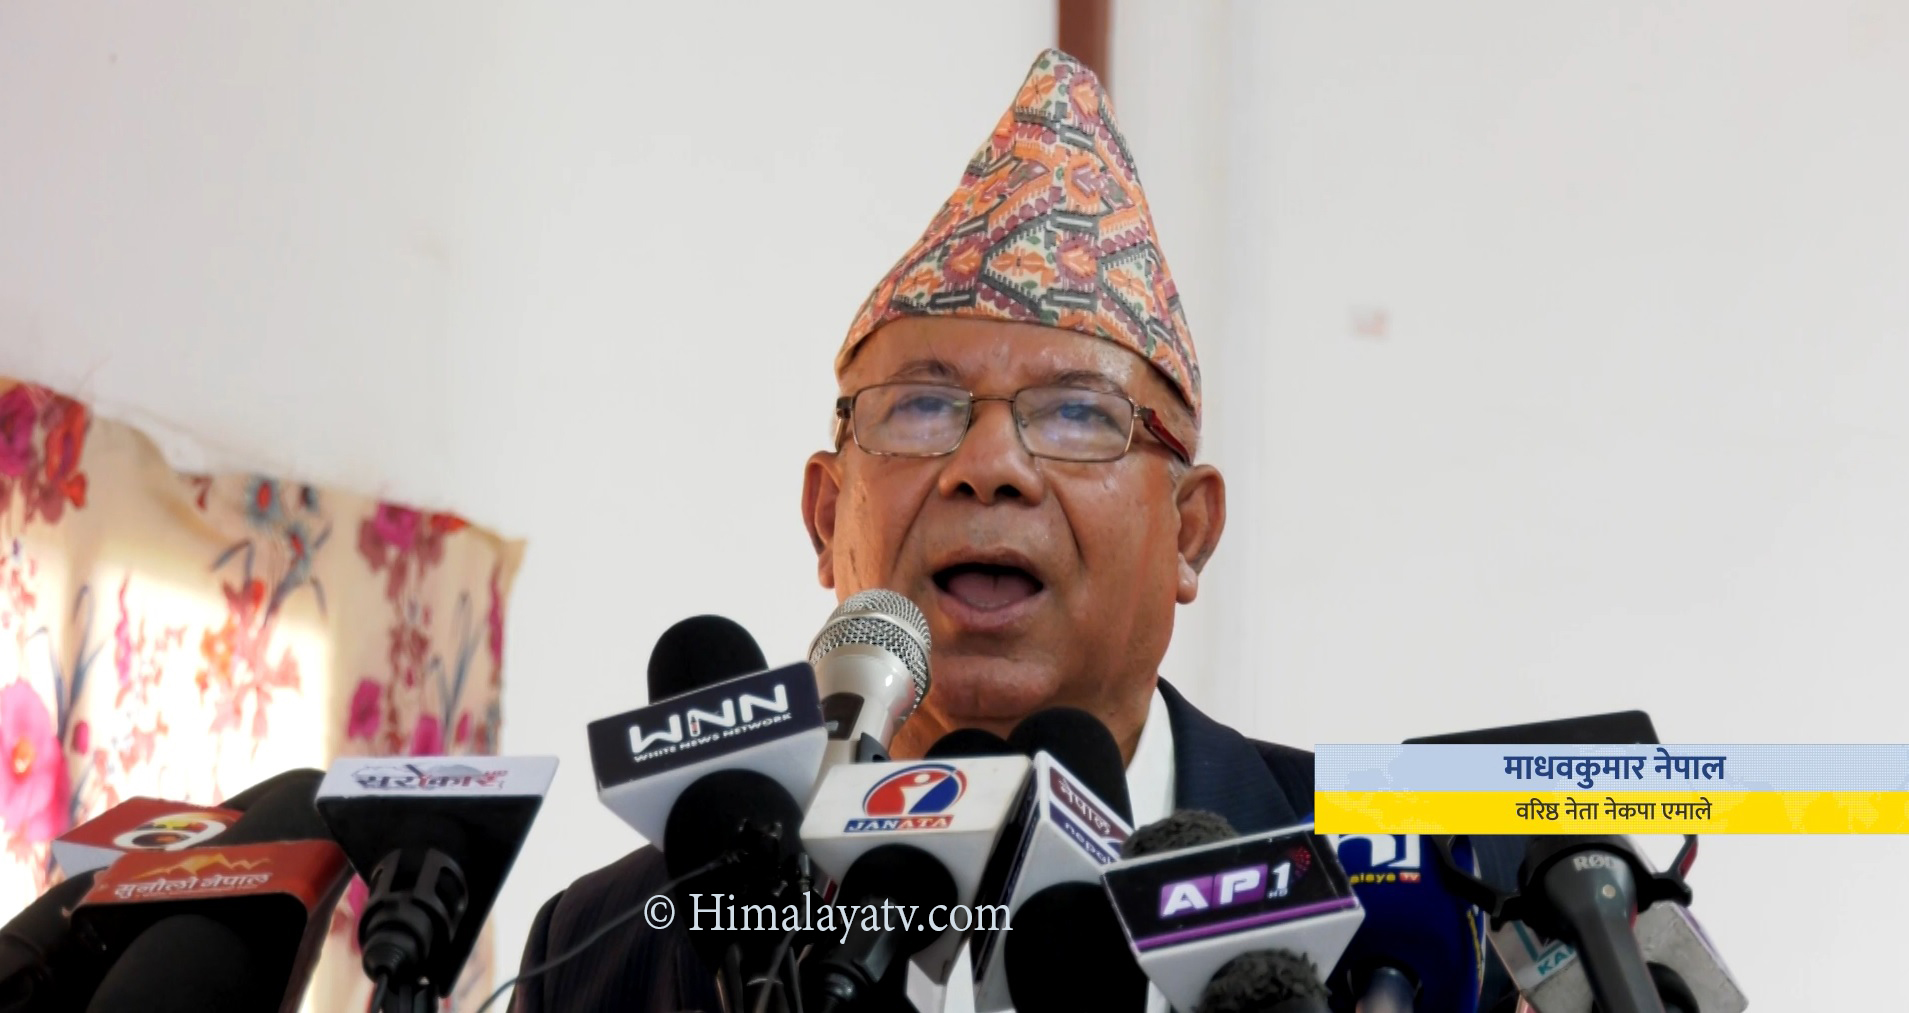 अब एकताको ढोका खुला राखेर अलग पार्टी बनाउँछौंः वरिष्ठ नेता नेपाल (भिडियो रिपोर्टसहित)